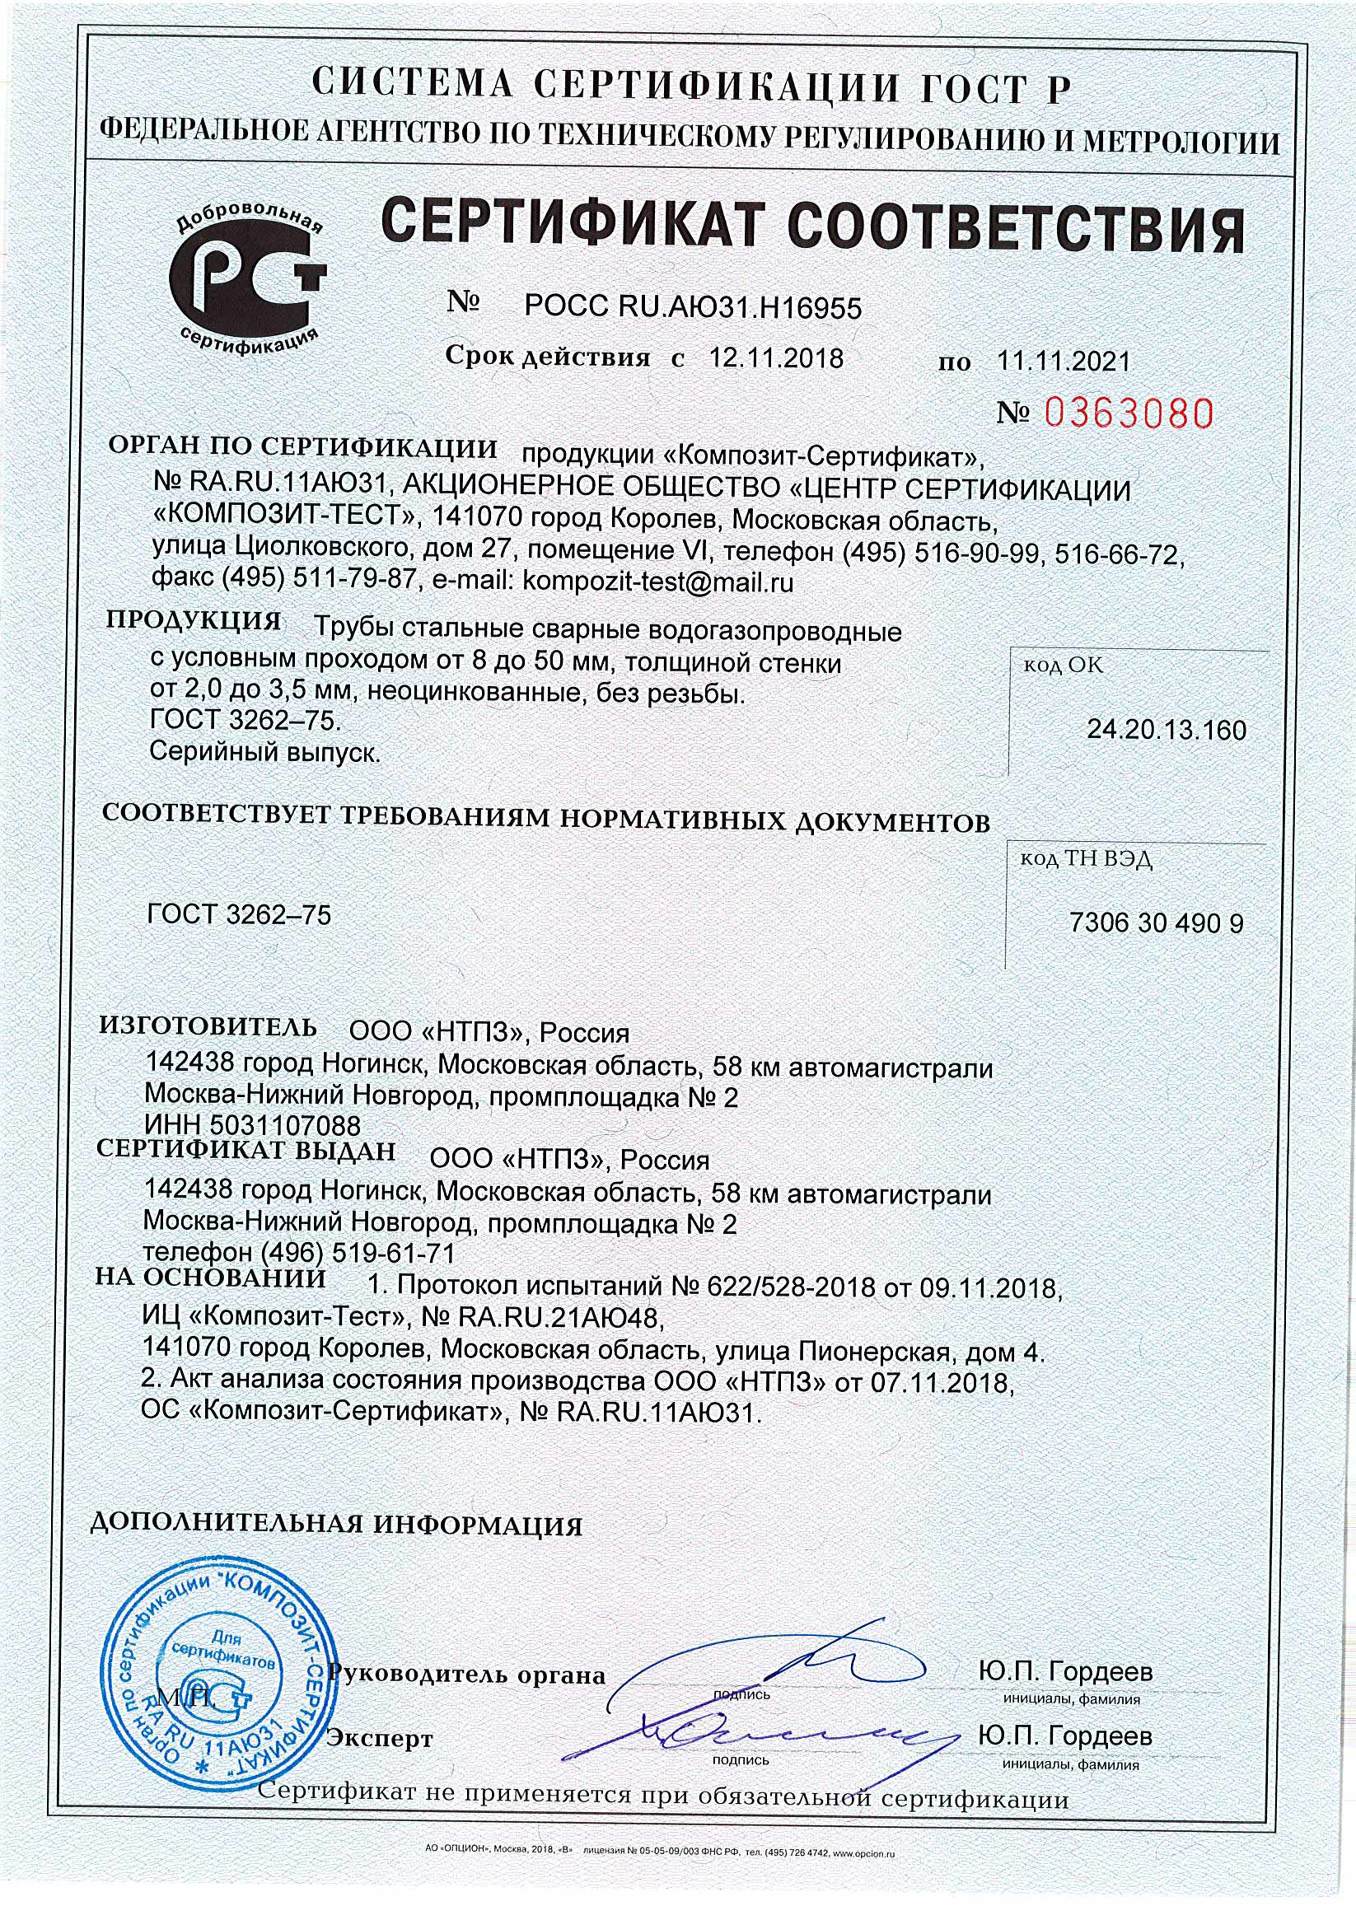 Сертификат соответствия стальных труб ВГП производства НТПЗ